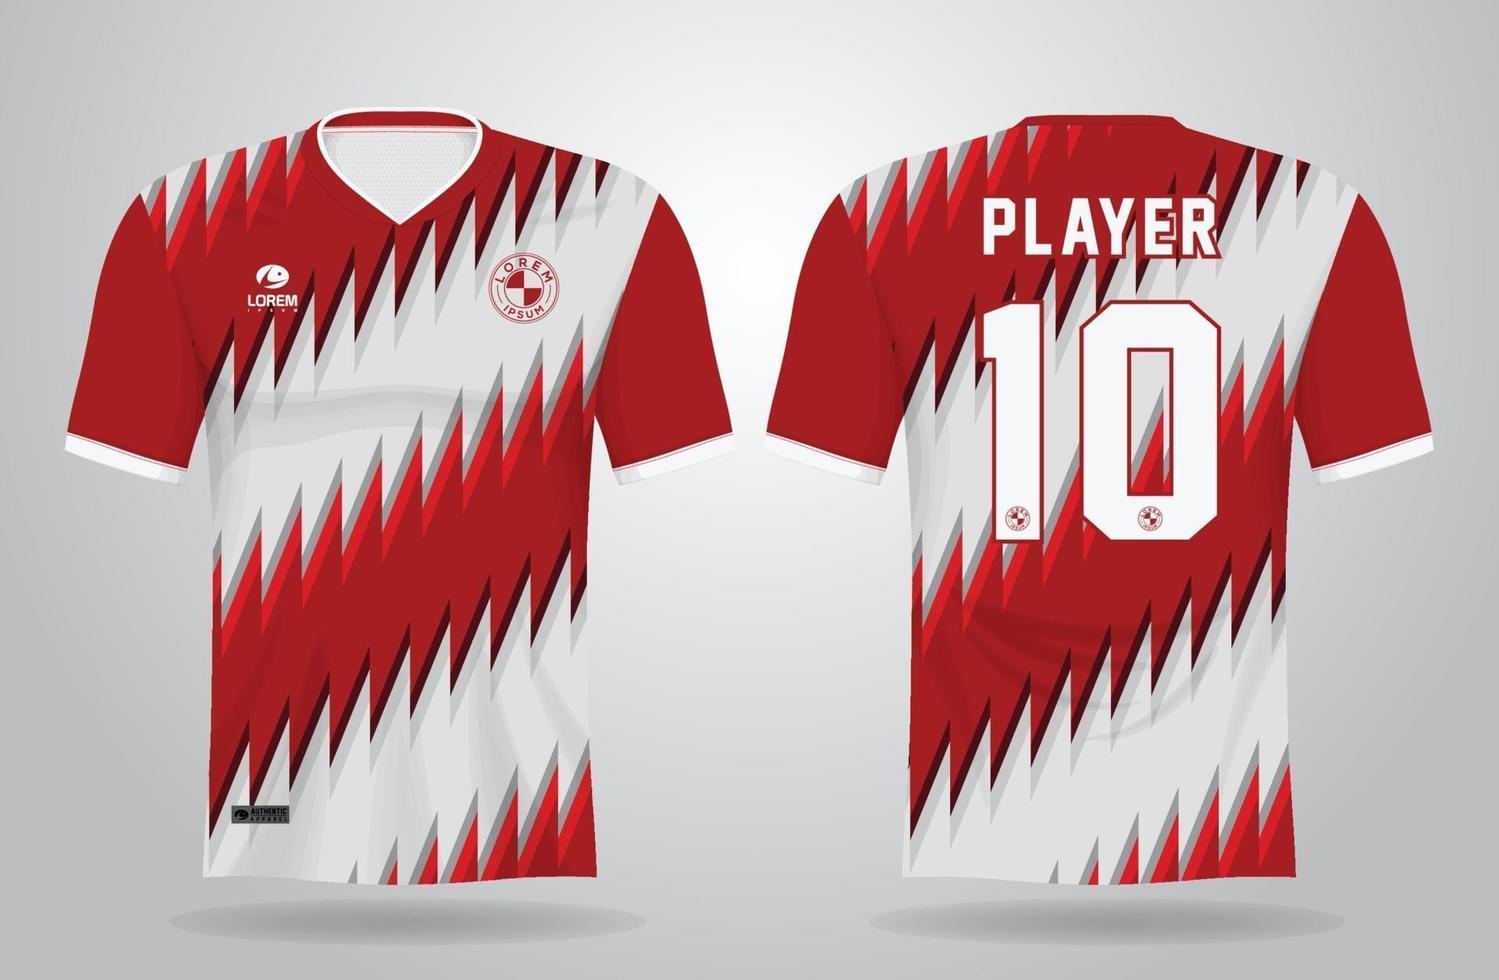 röd vit sport jersey mall för lag uniformer och fotboll t-shirt design vektor